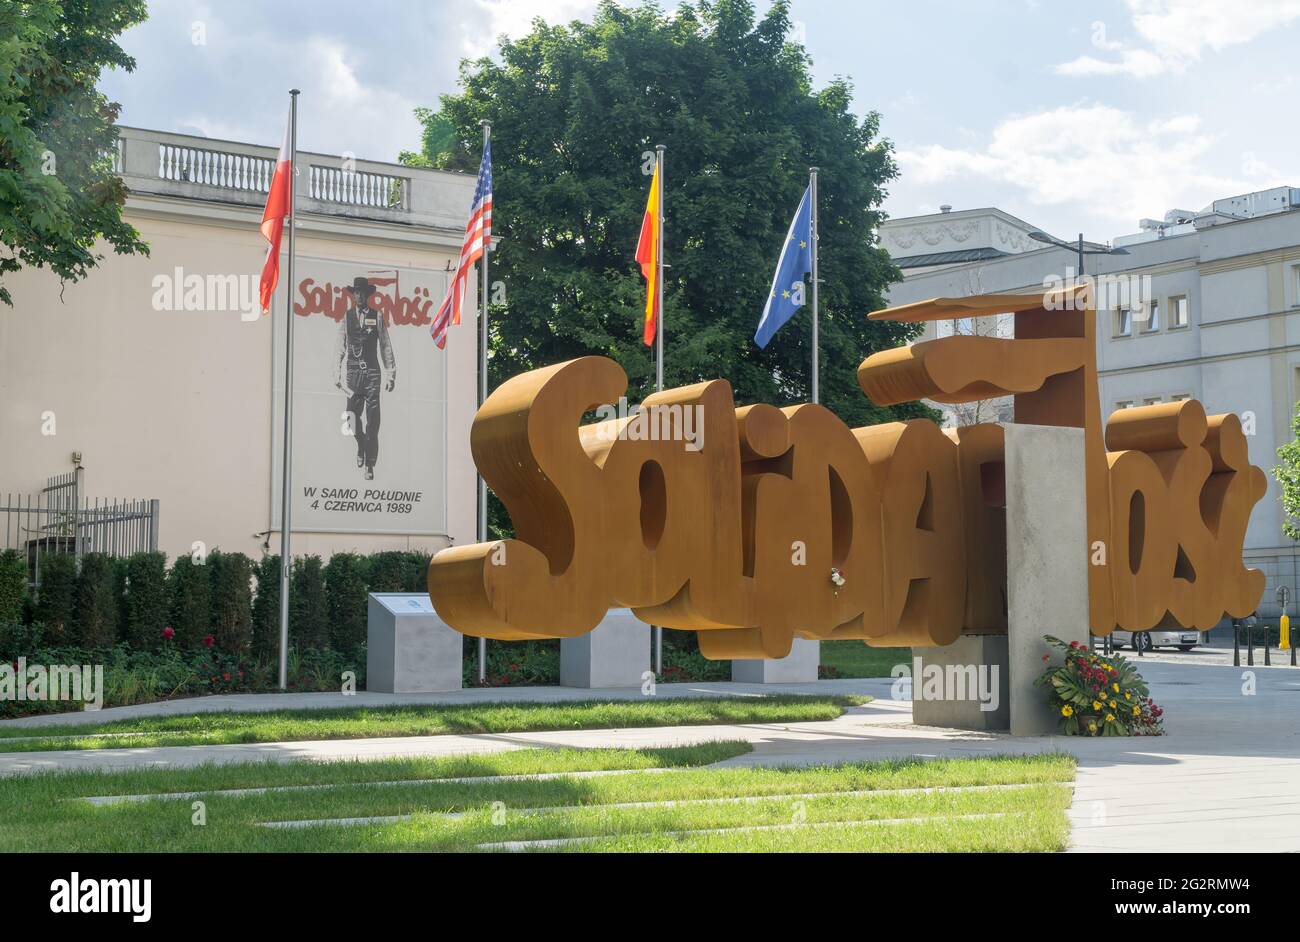 VARSAVIA, POLONIA, 11,2021 GIUGNO: Il Monumento della solidarietà 'olidarność' a Varsavia svelato il 04 giugno 2021 in occasione del 32° anniversario della Foto Stock